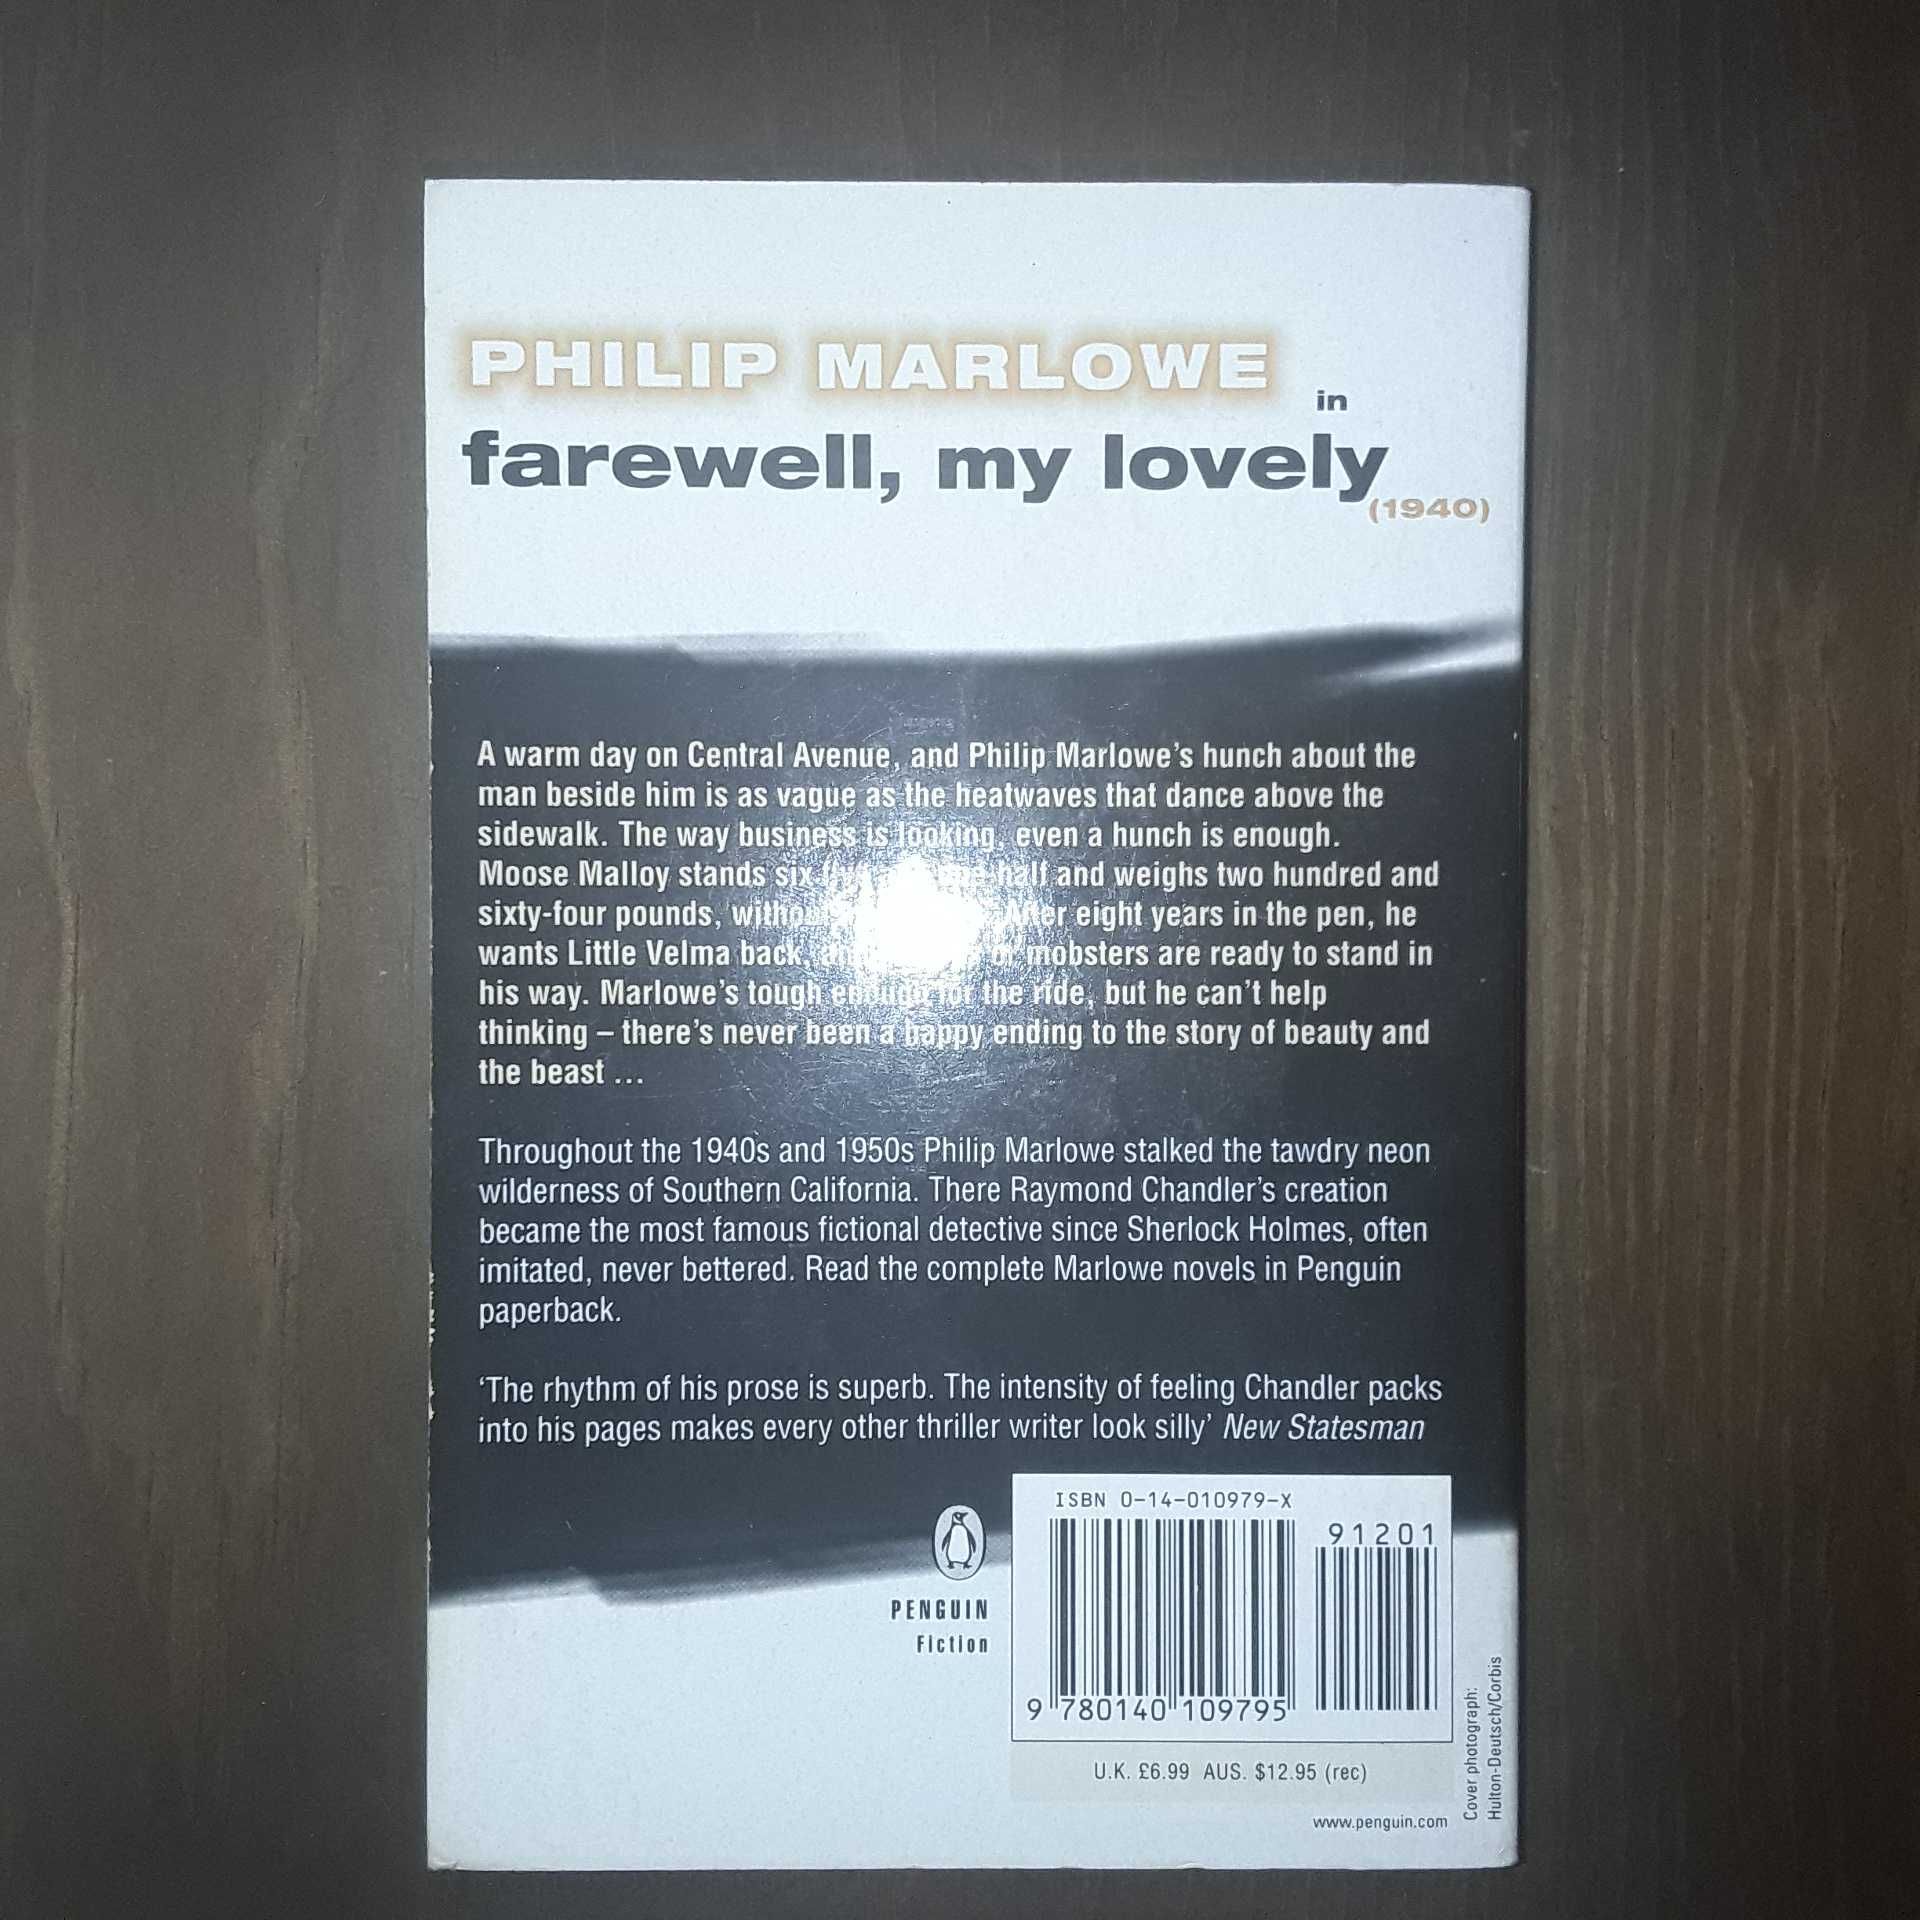 Farewell, My Lovely de Raymond Chandler [Livro em inglês]